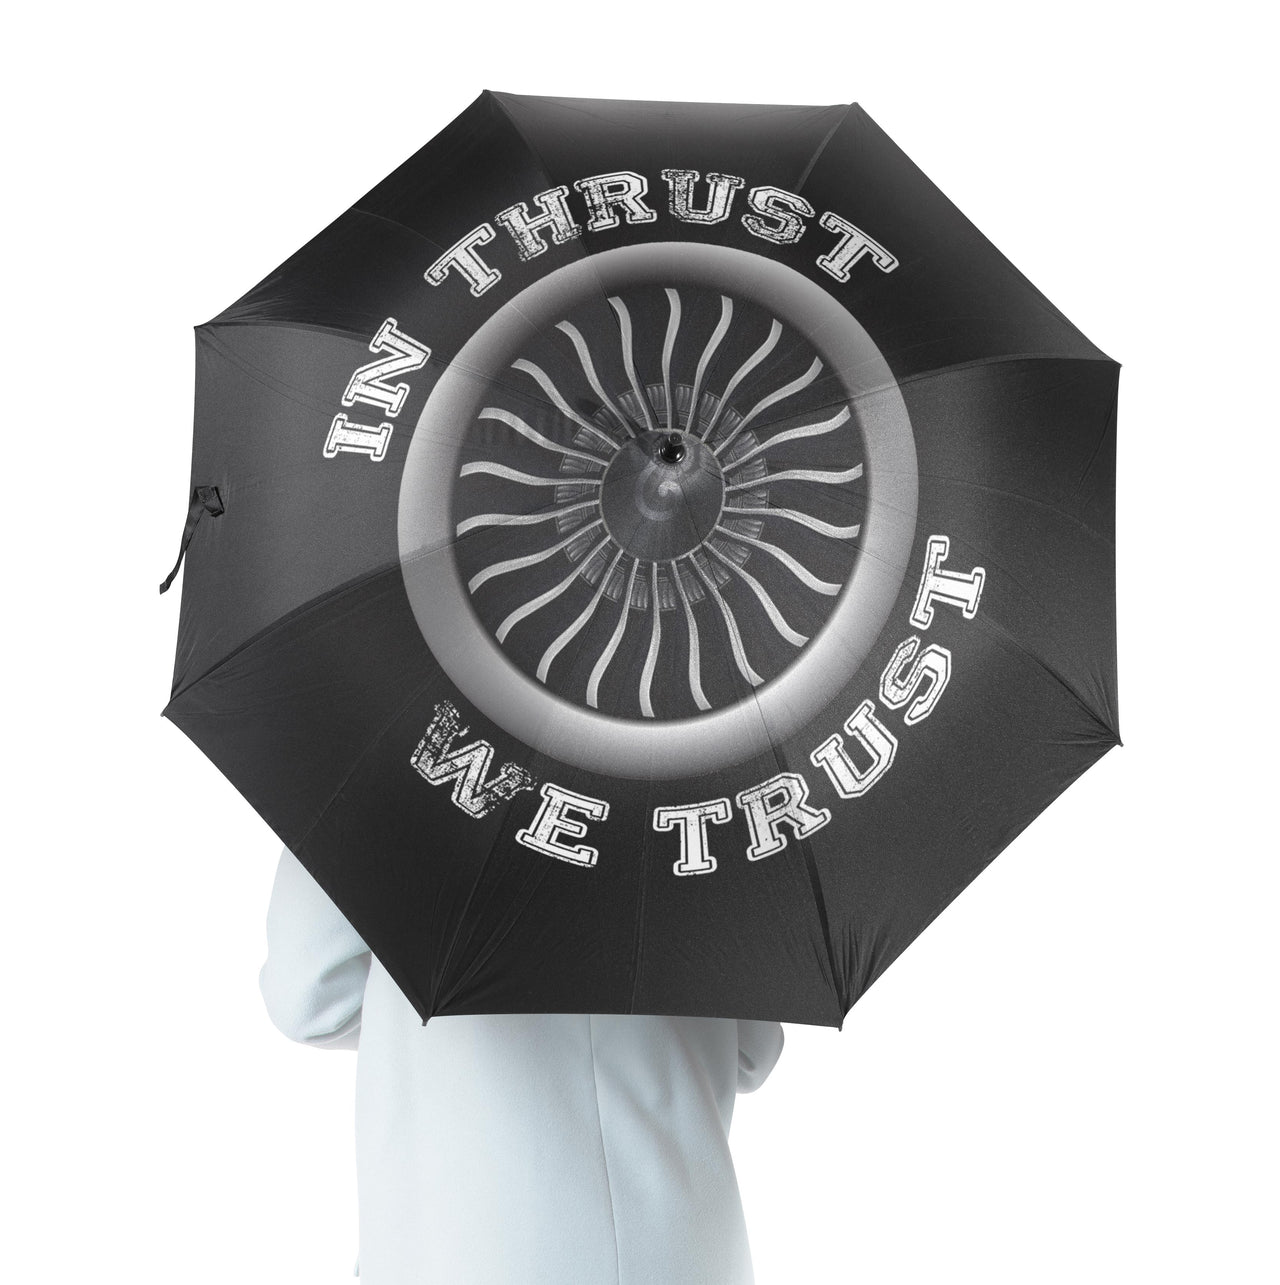 In Thrust We Trust (Vol 2) Designed Umbrella